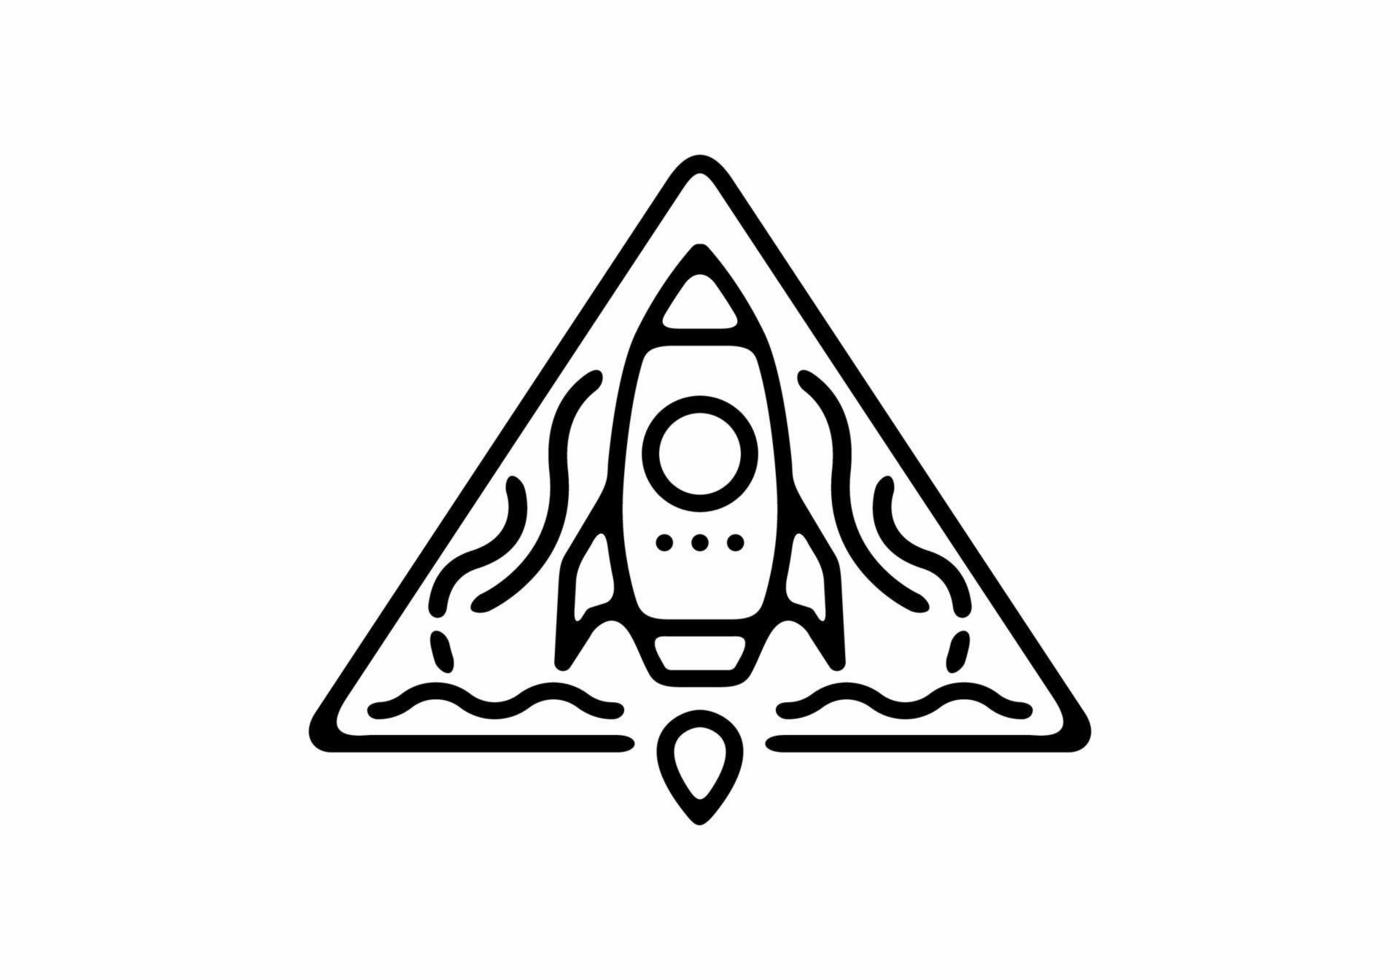 zwarte lijn kunst illustratie van vliegende raket in driehoek vorm vector